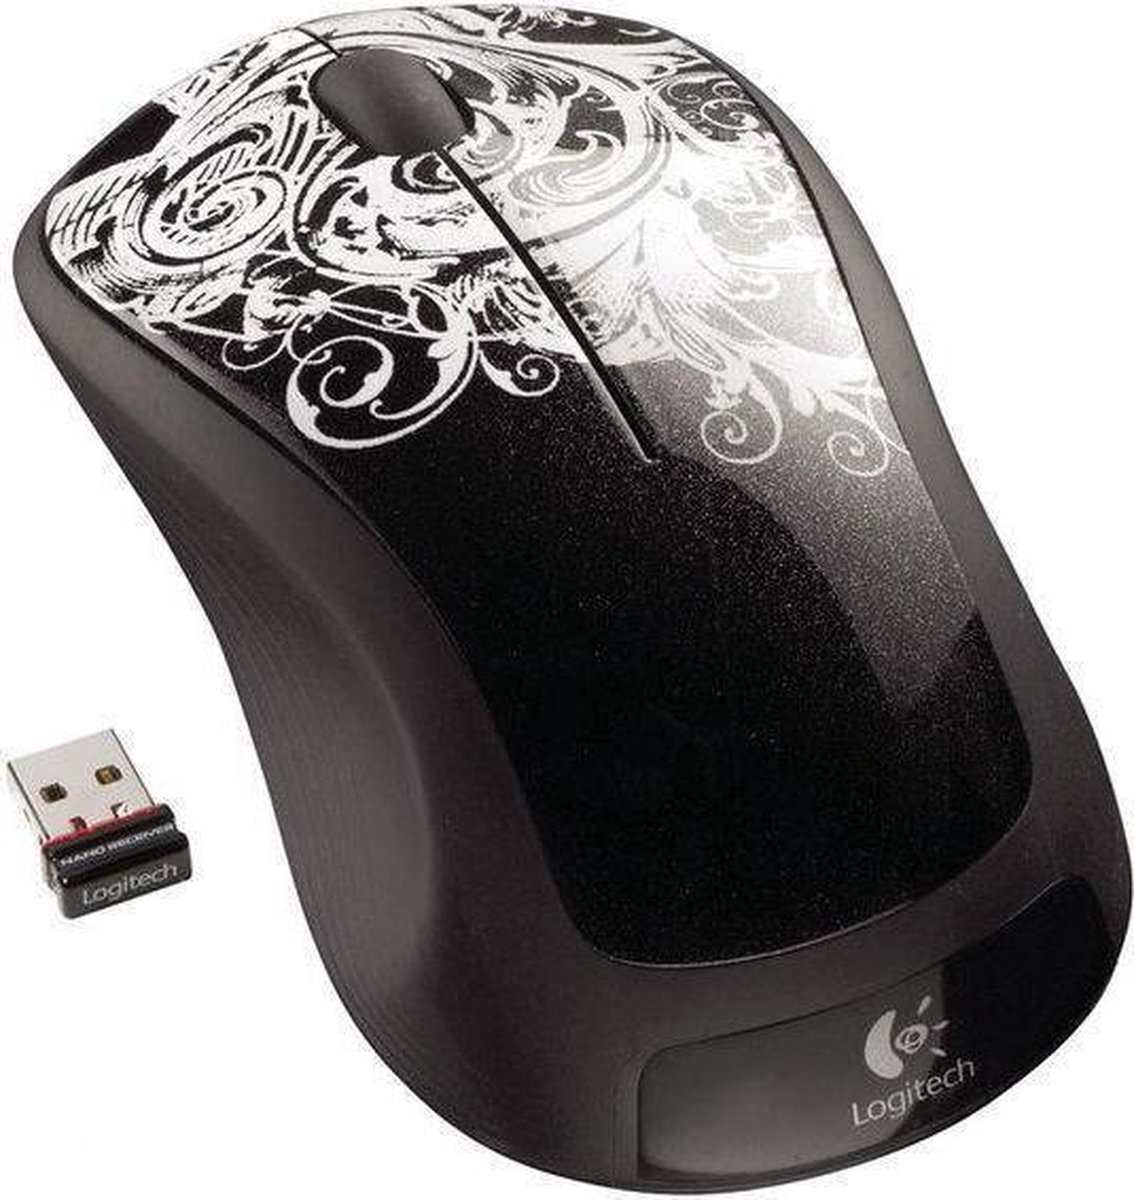 Беспроводная мышь m310. Мышь Logitech Wireless Mouse m310. Мышь оптическая Logitech m310 910-003986 USB 1000dpi. Мышка Logitech 310 беспроводная. Игровая беспроводная мышь Logitech m310.